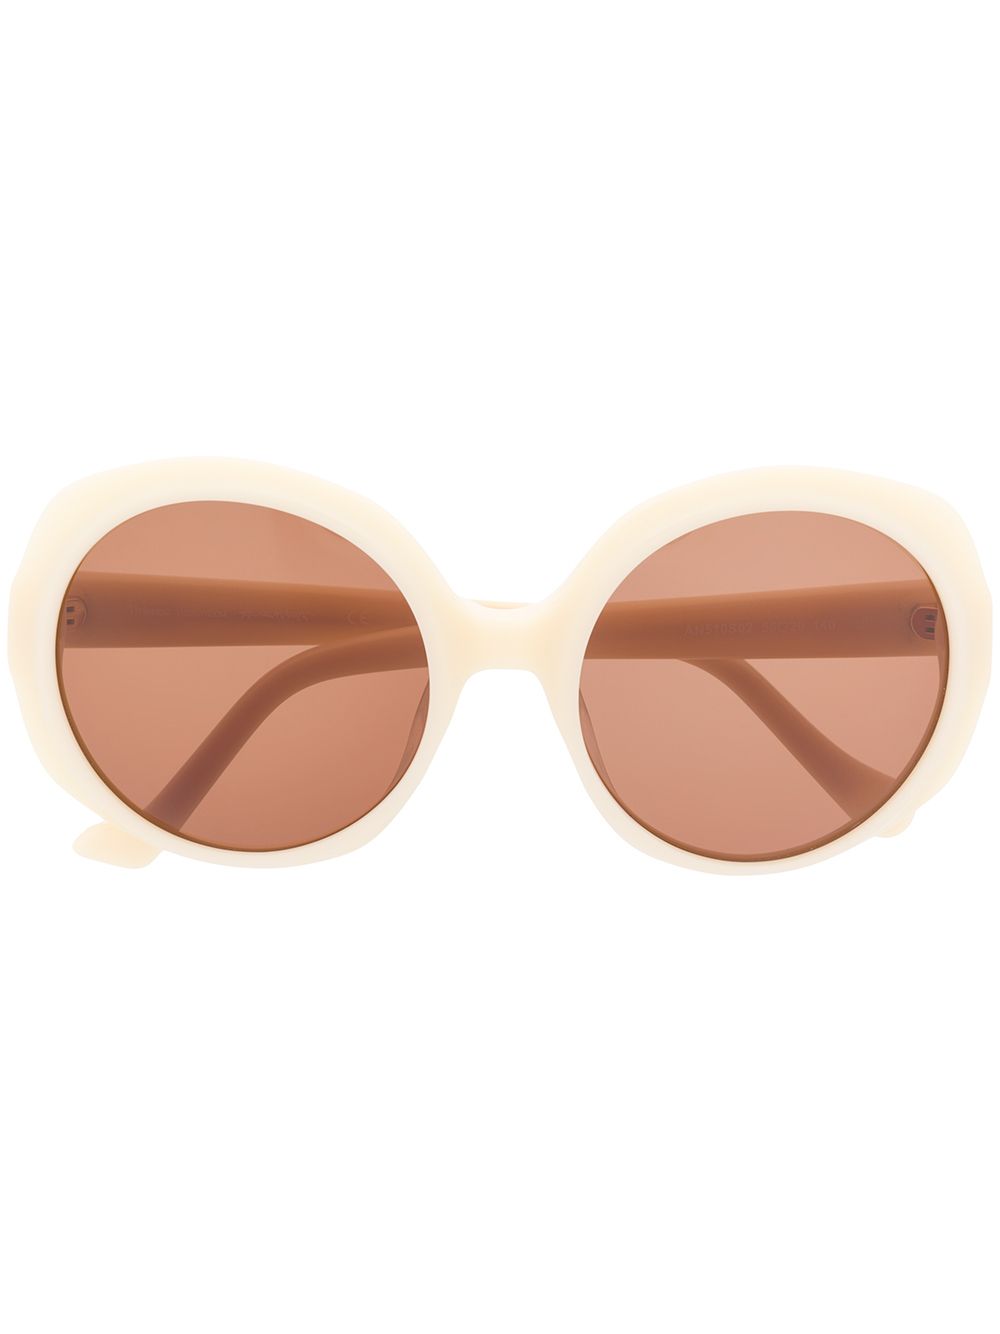 фото Vivienne Westwood Anglomania массивные солнцезащитные очки